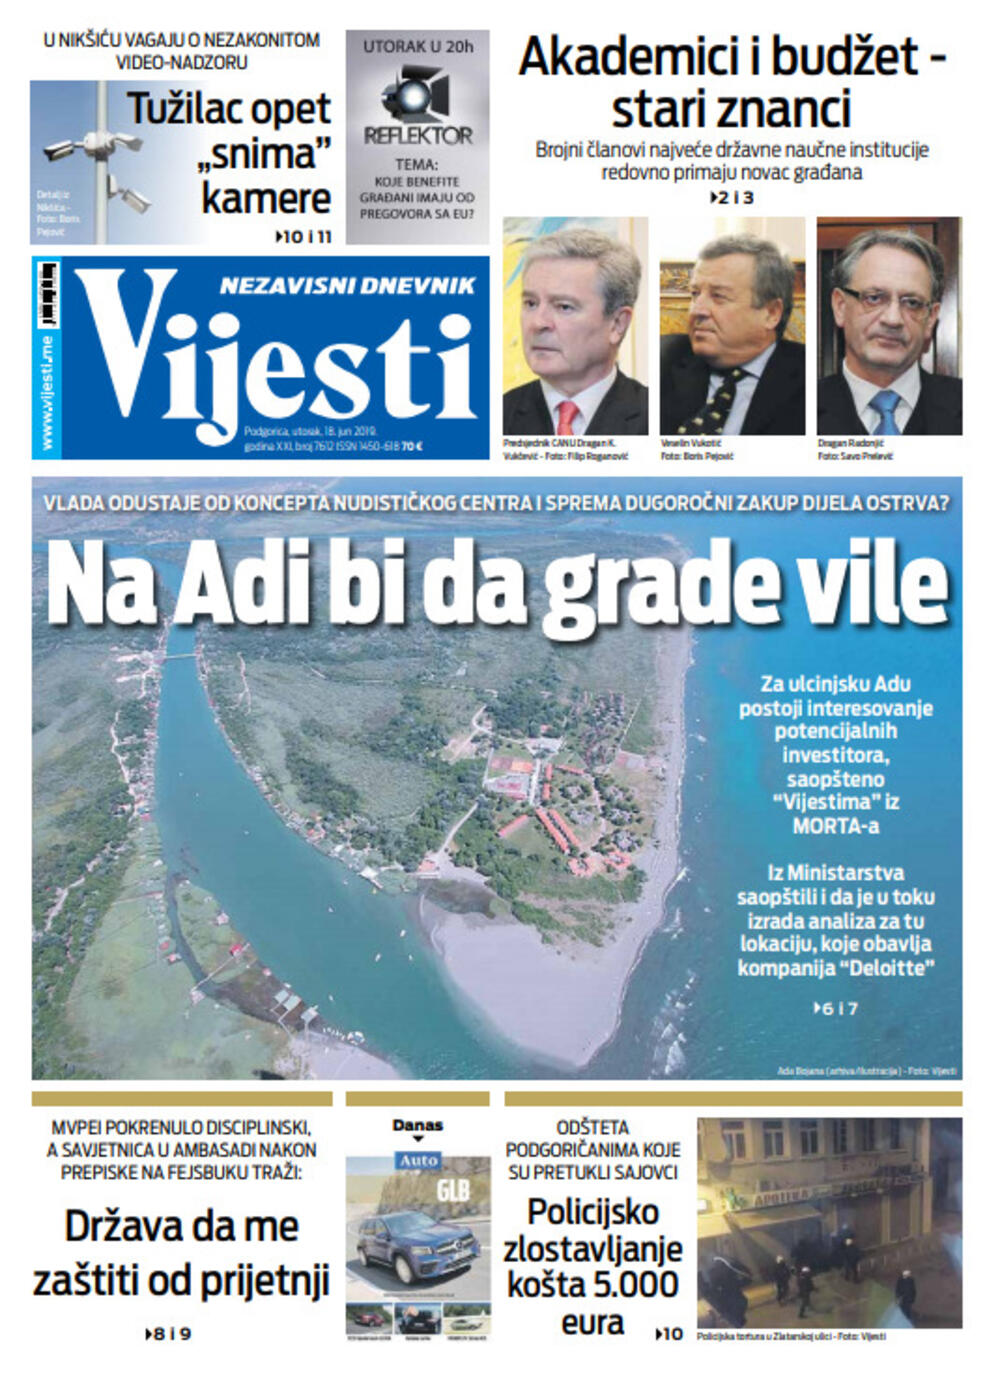 Naslovna strana "Vijesti" za 18. jun, Foto: "Vijesti"